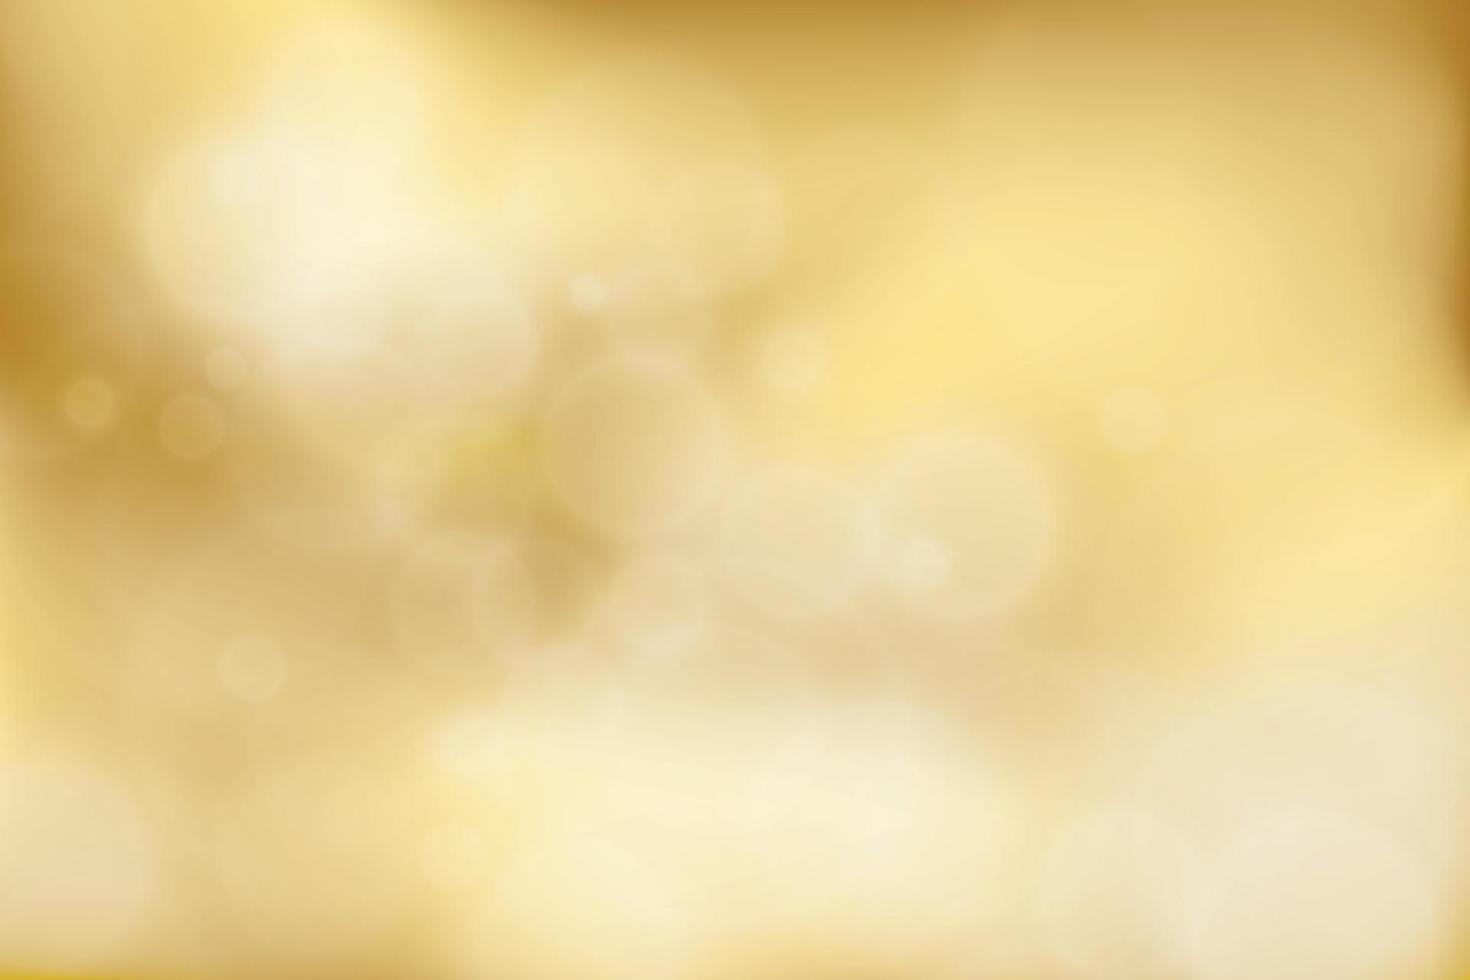 sfumatura sfocata astratta oro con bokeh, sfondo chiaro dorato. illustrazione vettoriale. vettore